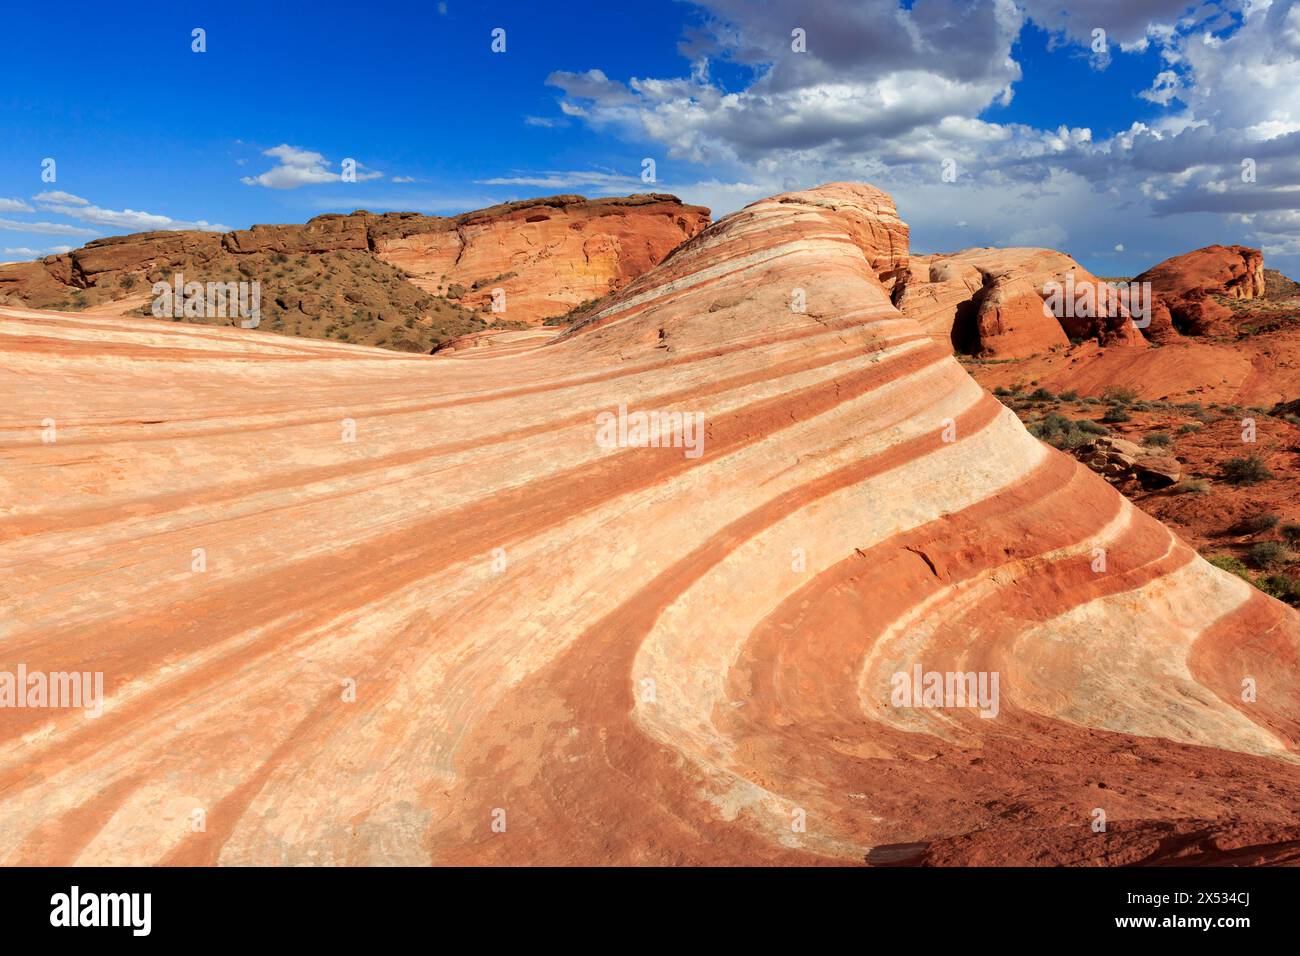 Das Bild zeigt eine beeindruckende Wüstenlandschaft mit hügeligen roten Felsen unter blauem Himmel, Valley of Fire, Moapa Valley, Fire Wave, Nordamerika, USA Stockfoto